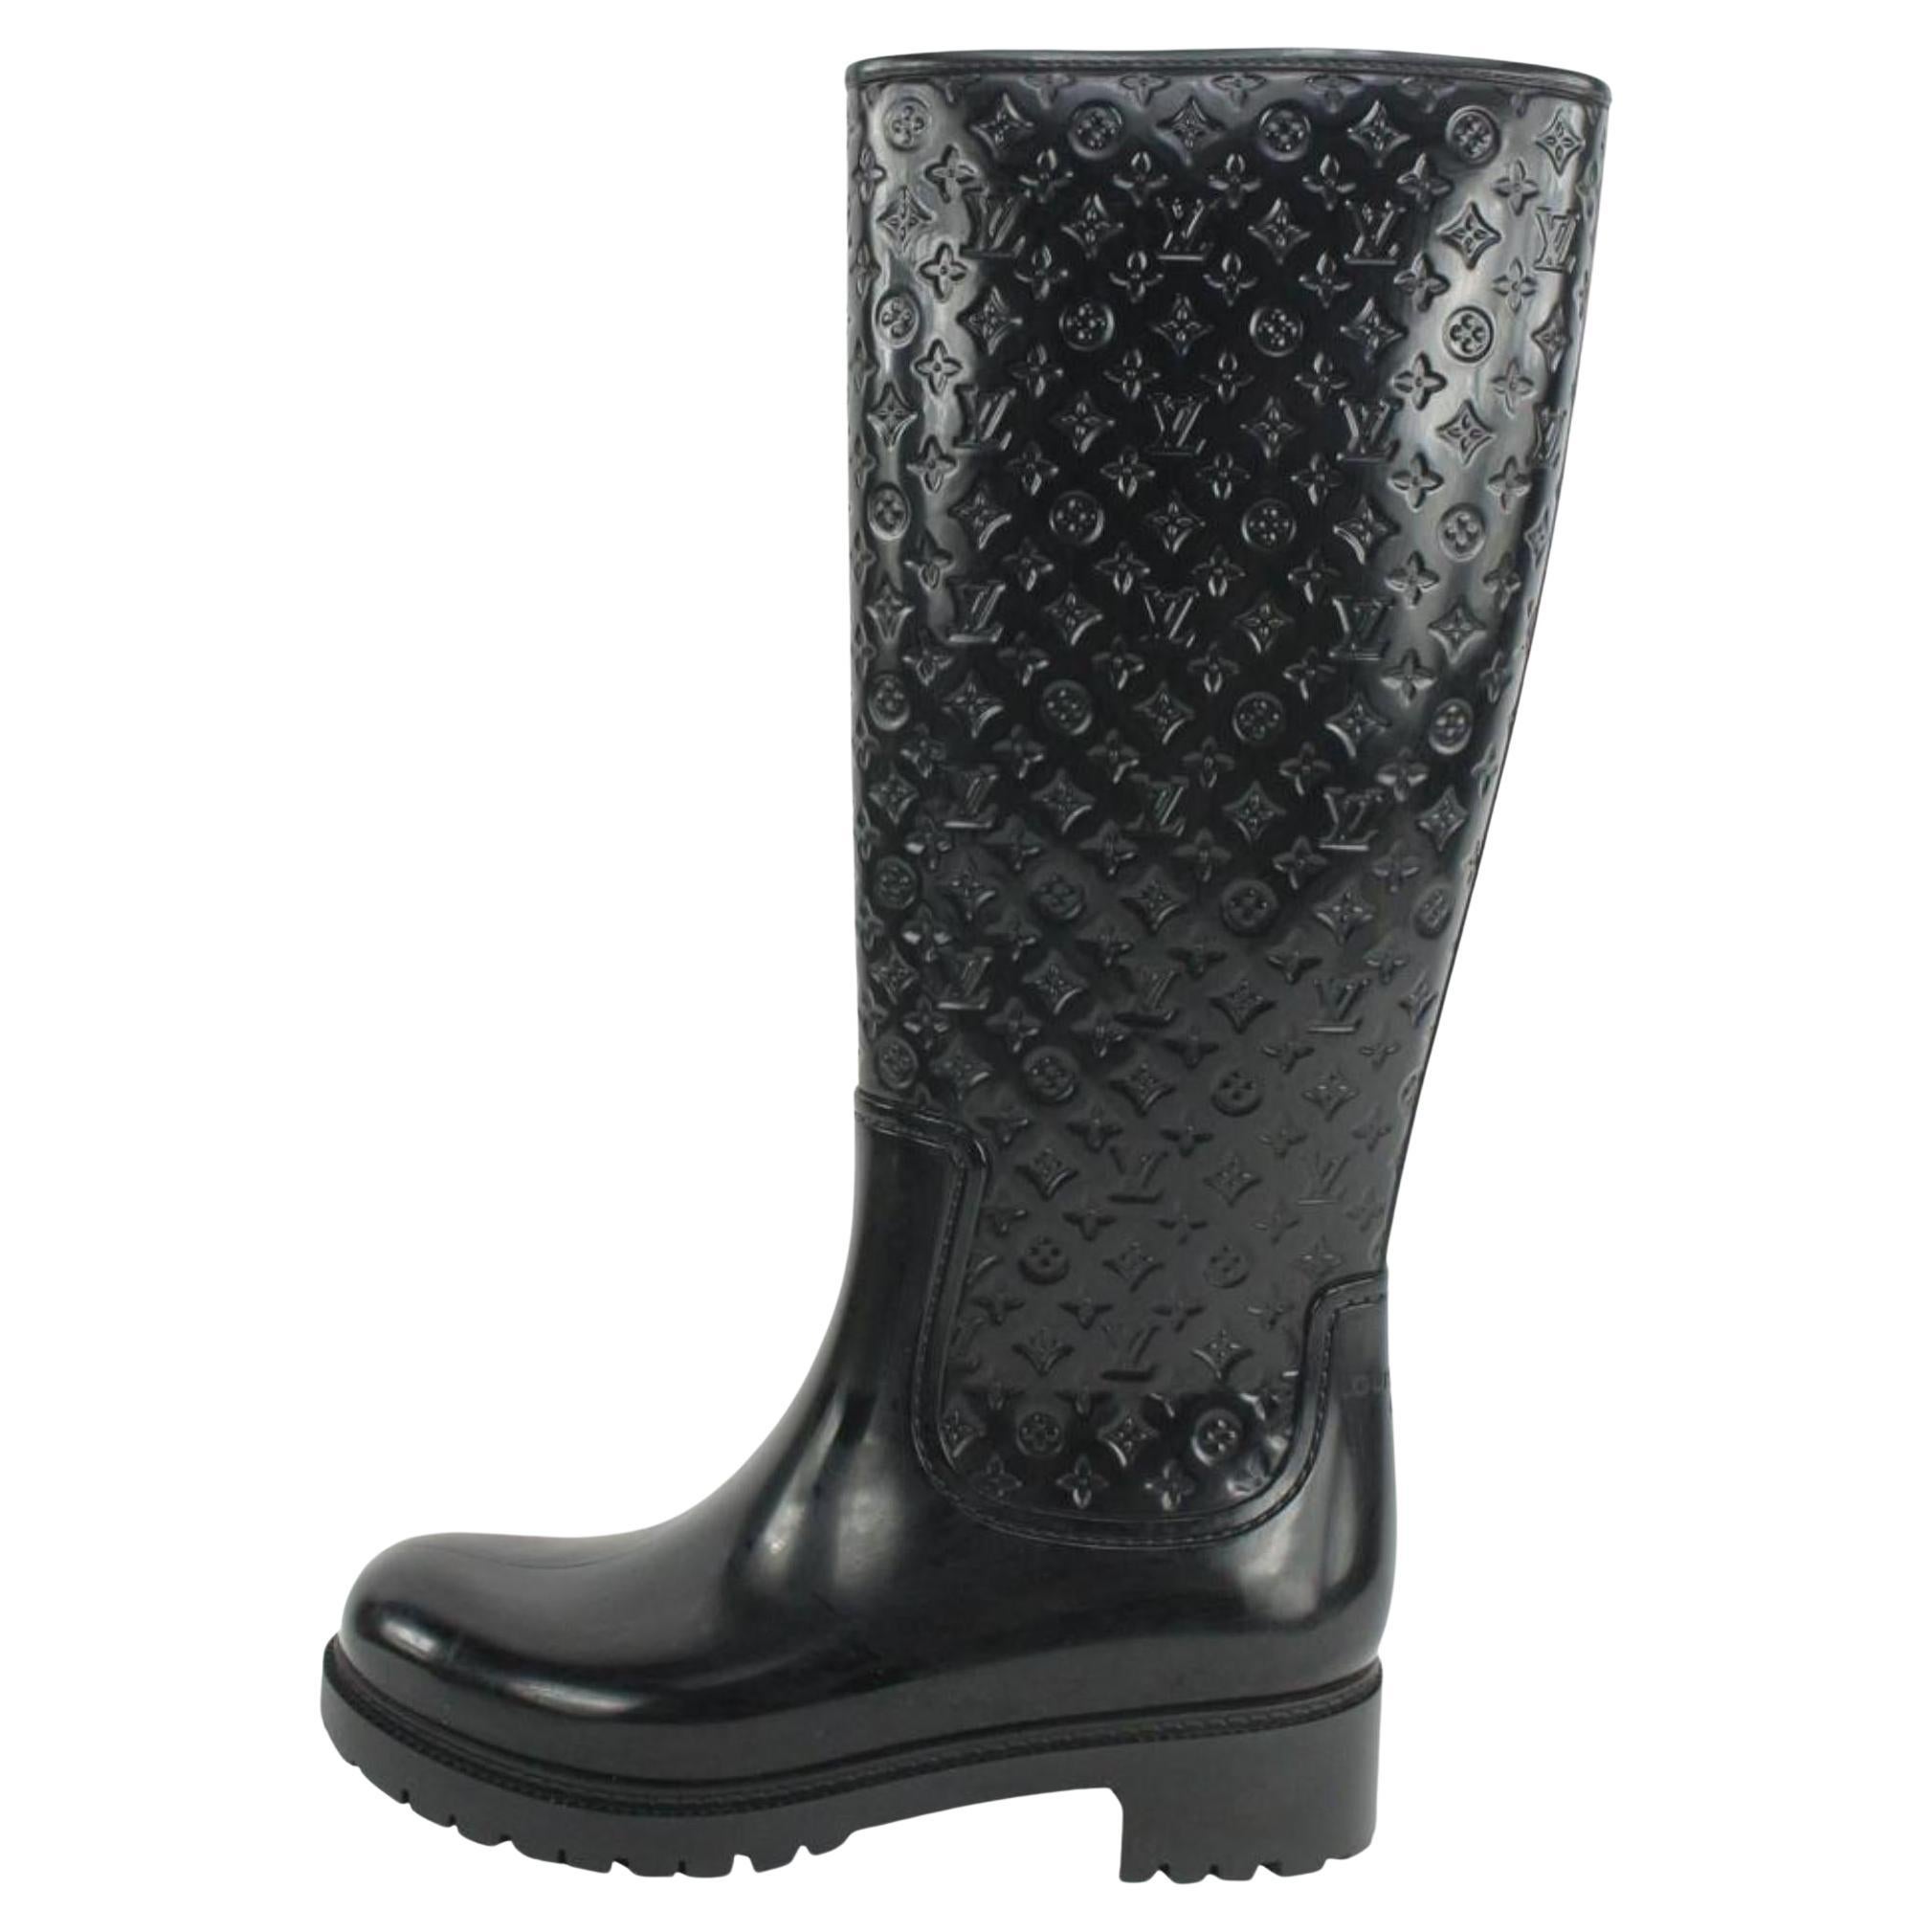 Louis Vuitton Women's 36 Black Rubber Rainboots Tall Rain Boots 9L1221 For Sale